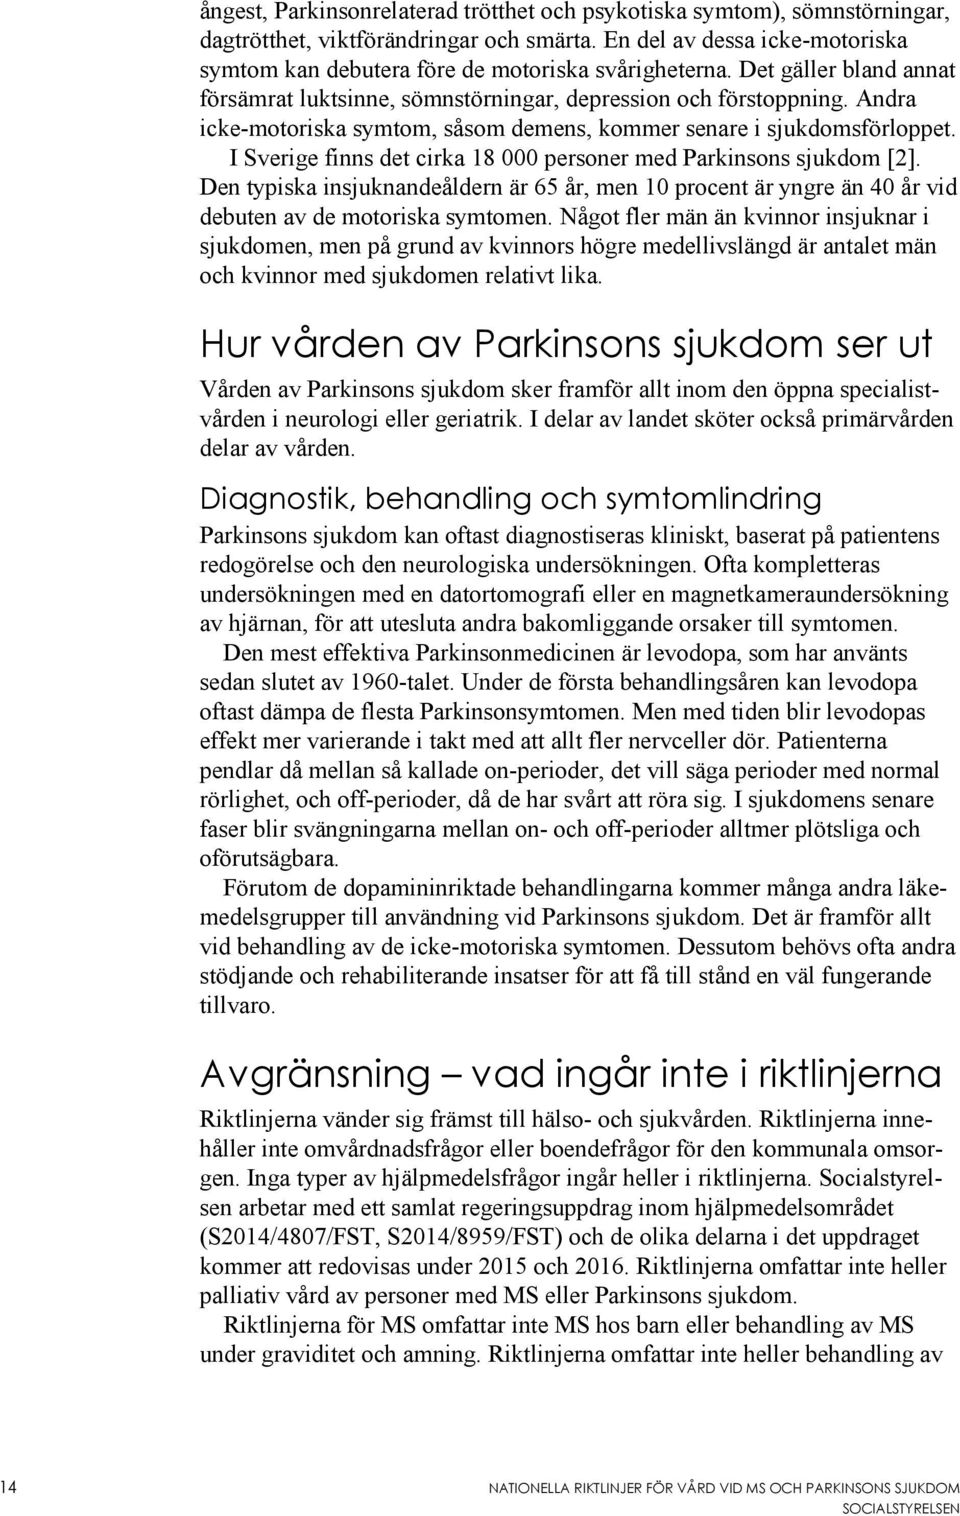 Andra icke-motoriska symtom, såsom demens, kommer senare i sjukdomsförloppet. I Sverige finns det cirka 18 000 personer med Parkinsons sjukdom [2].